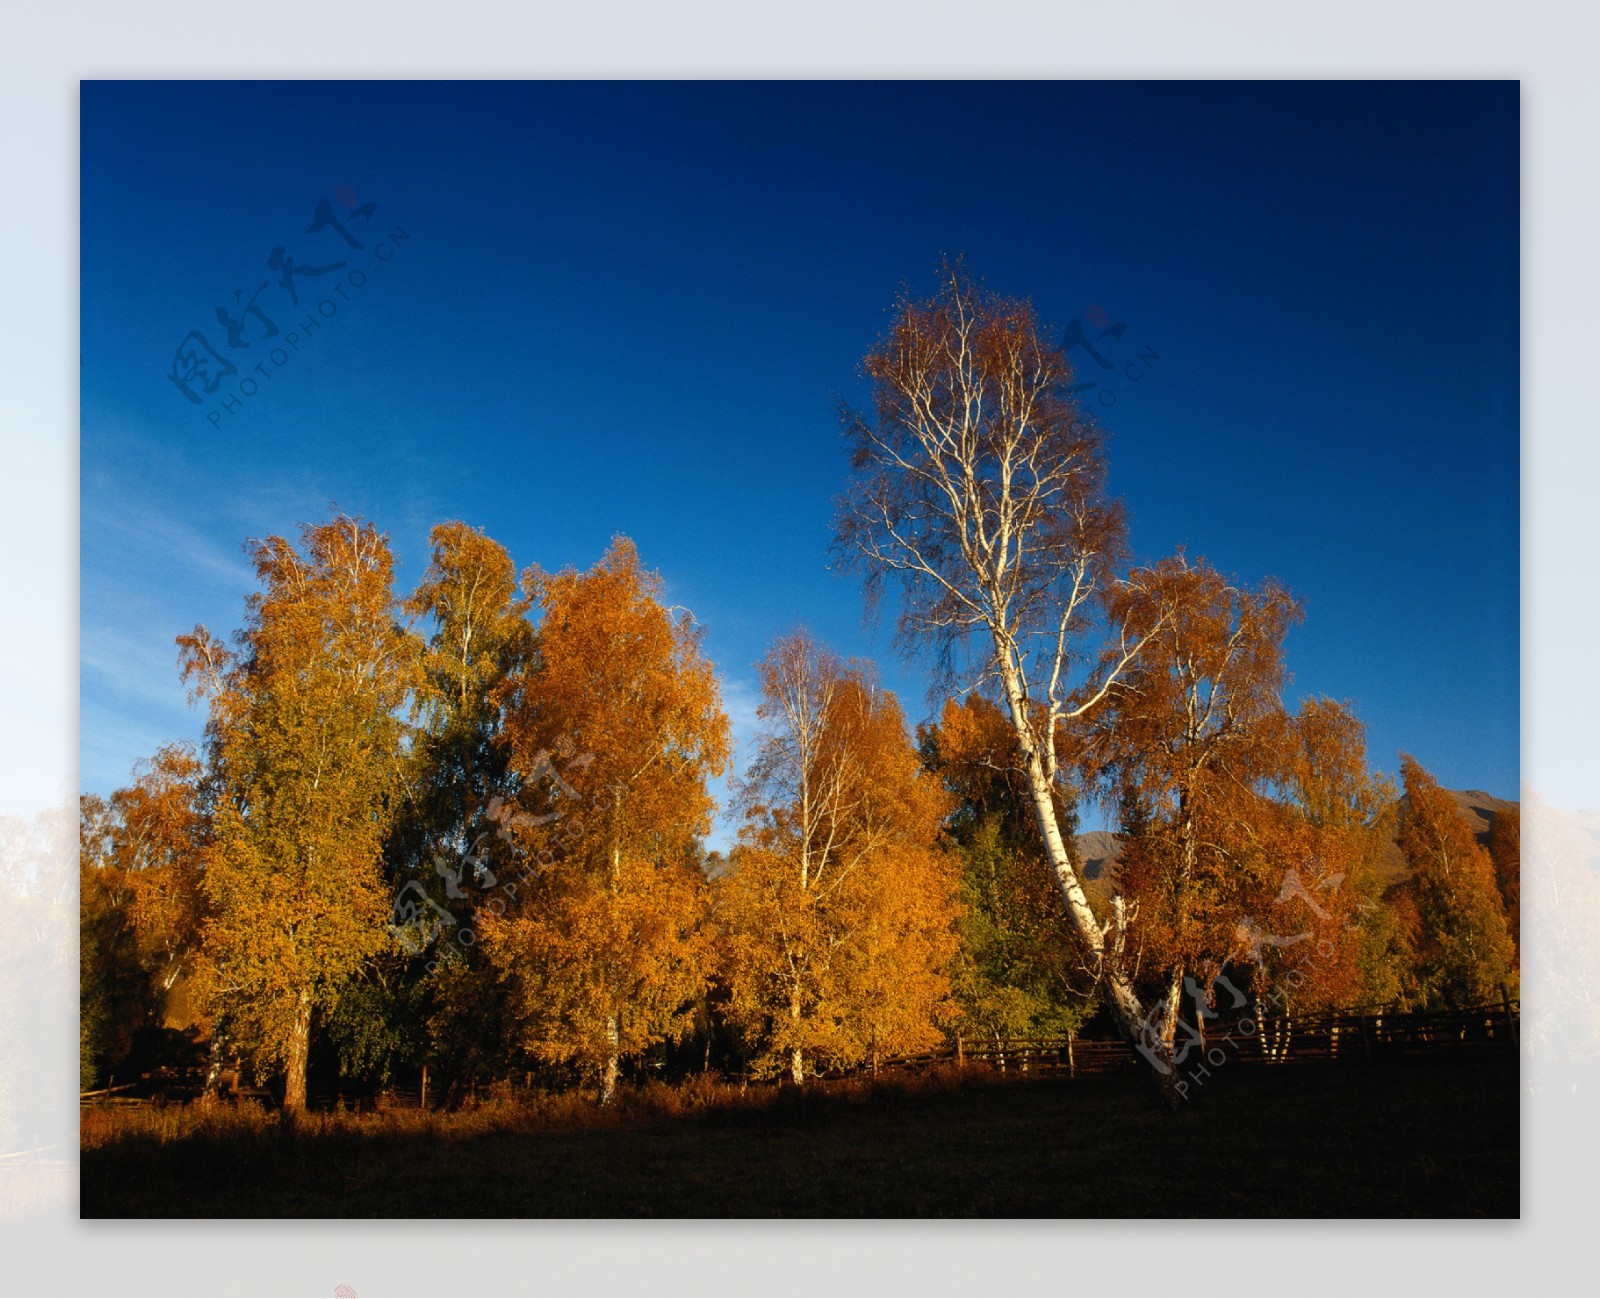 秋天自然风景图片图片